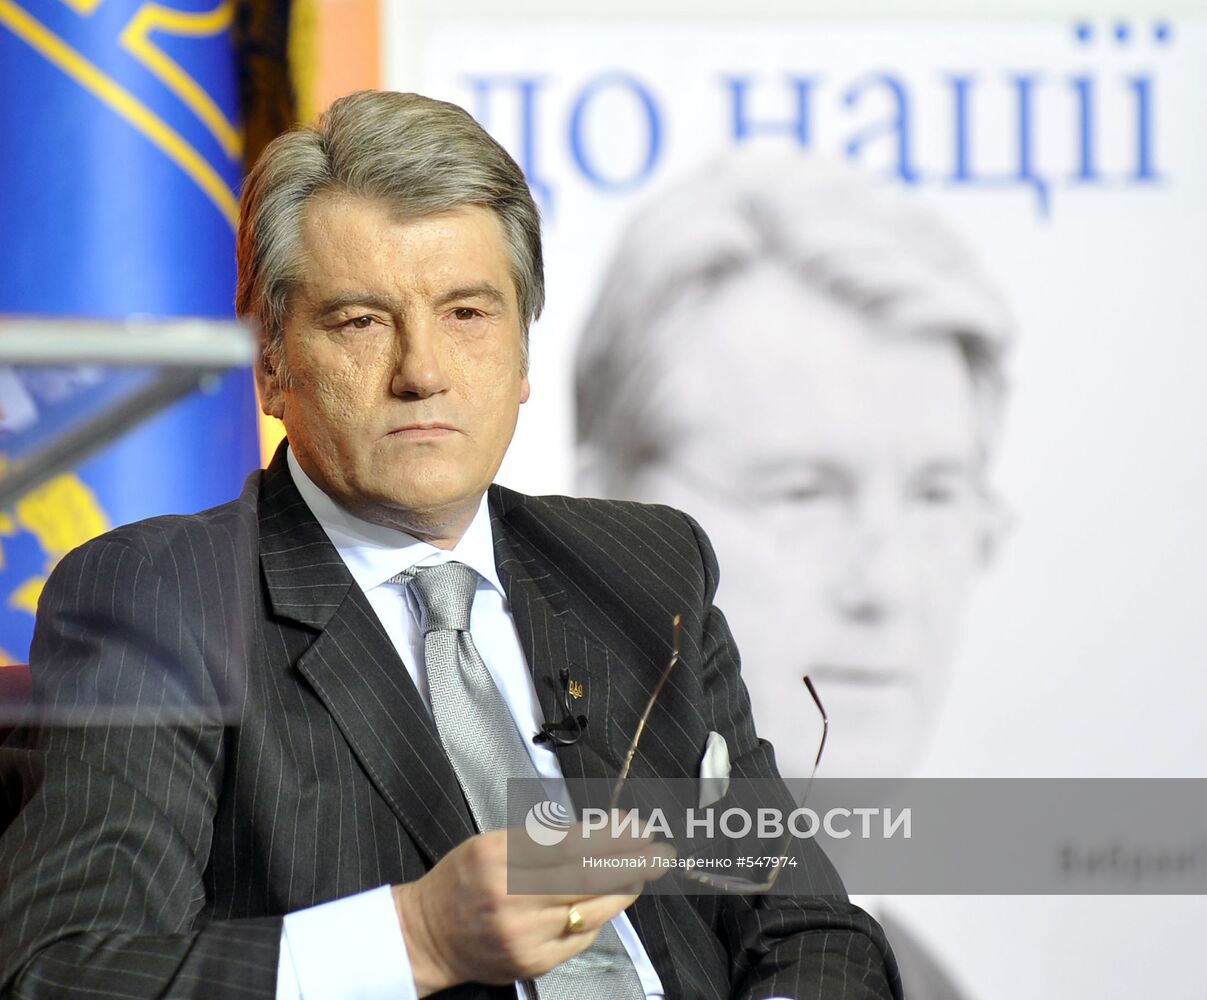 Виктор Ющенко на презентации книги "К нации"